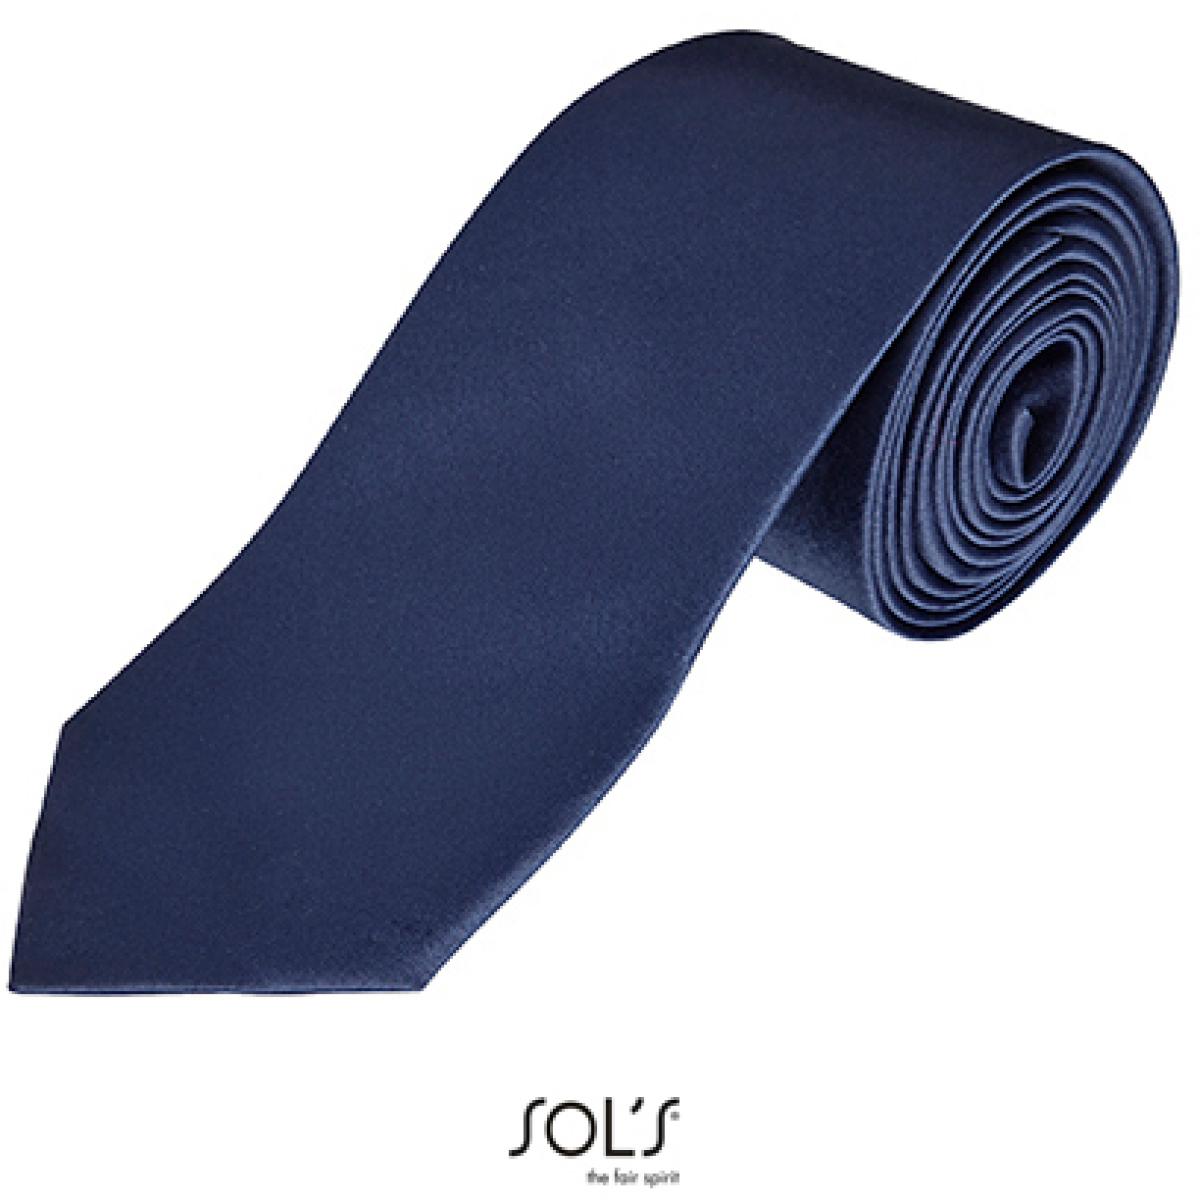 Hersteller: SOLs Herstellernummer: 02932 Artikelbezeichnung: Herren Krawatte Garner Tie - Länge: 150 cm, Breite: 7 cm" Farbe: French Navy